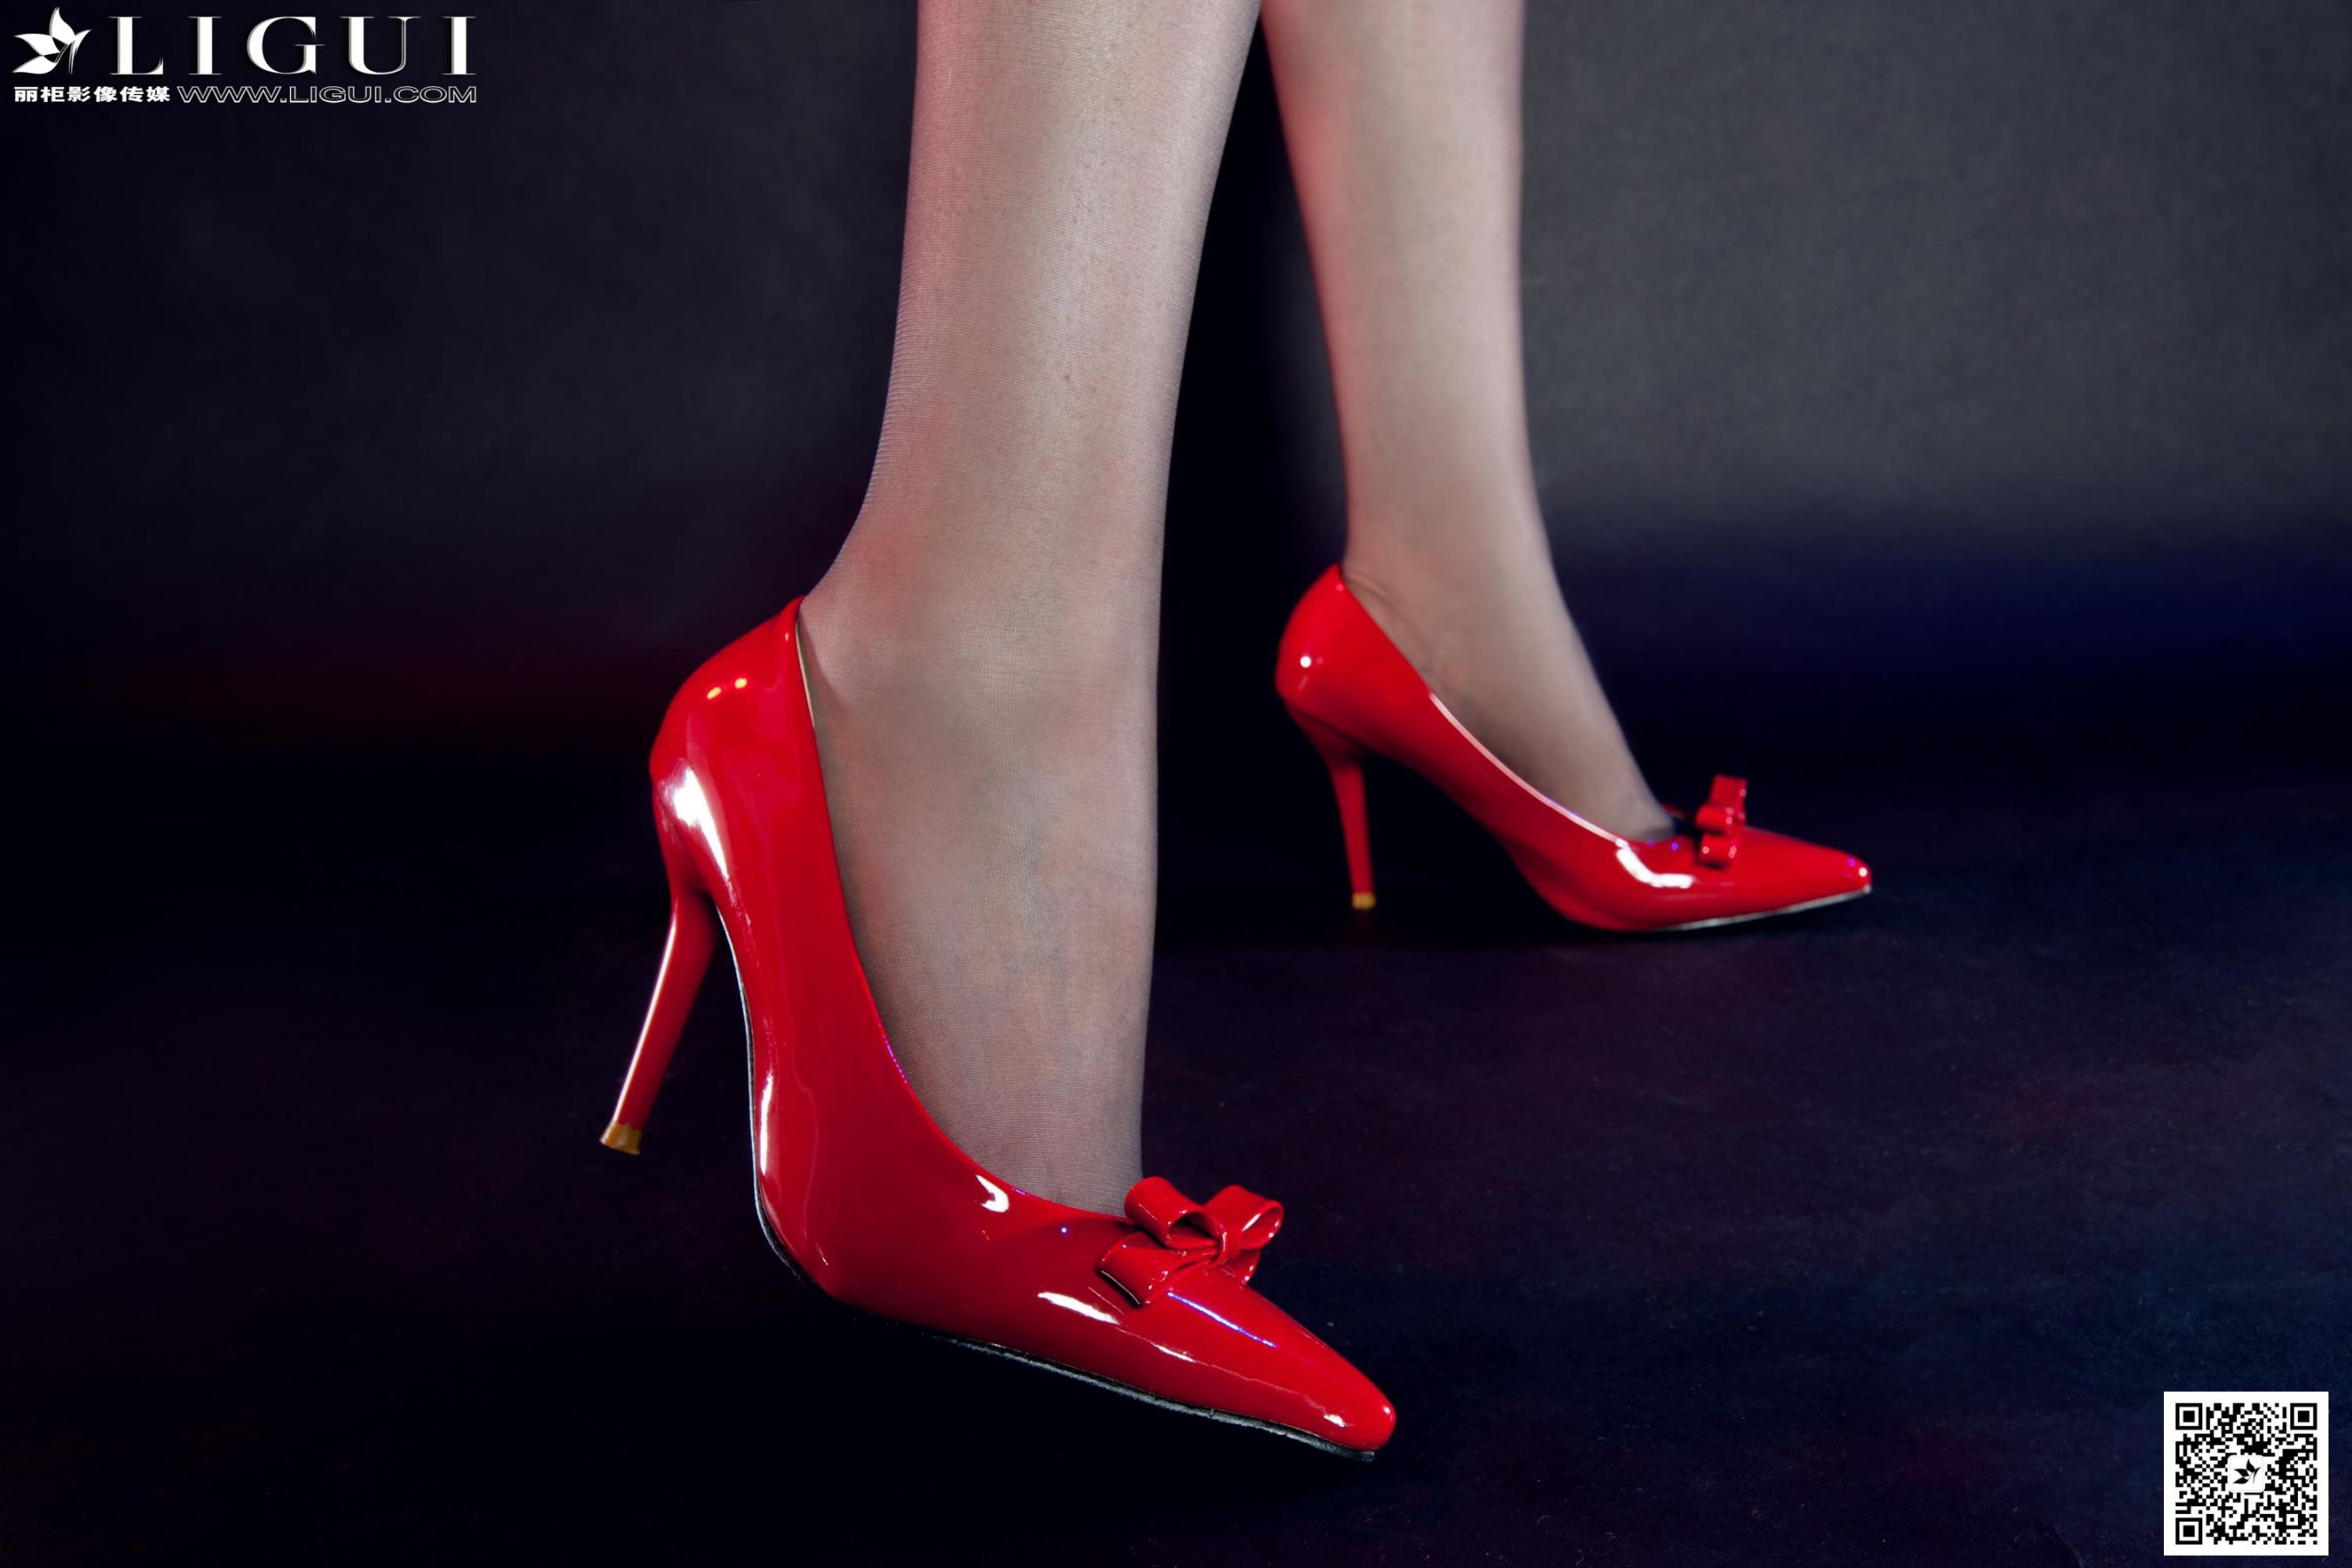 [丽柜LiGui] Model AMY《红高跟短发灰丝女郎》美腿玉足写真图片 